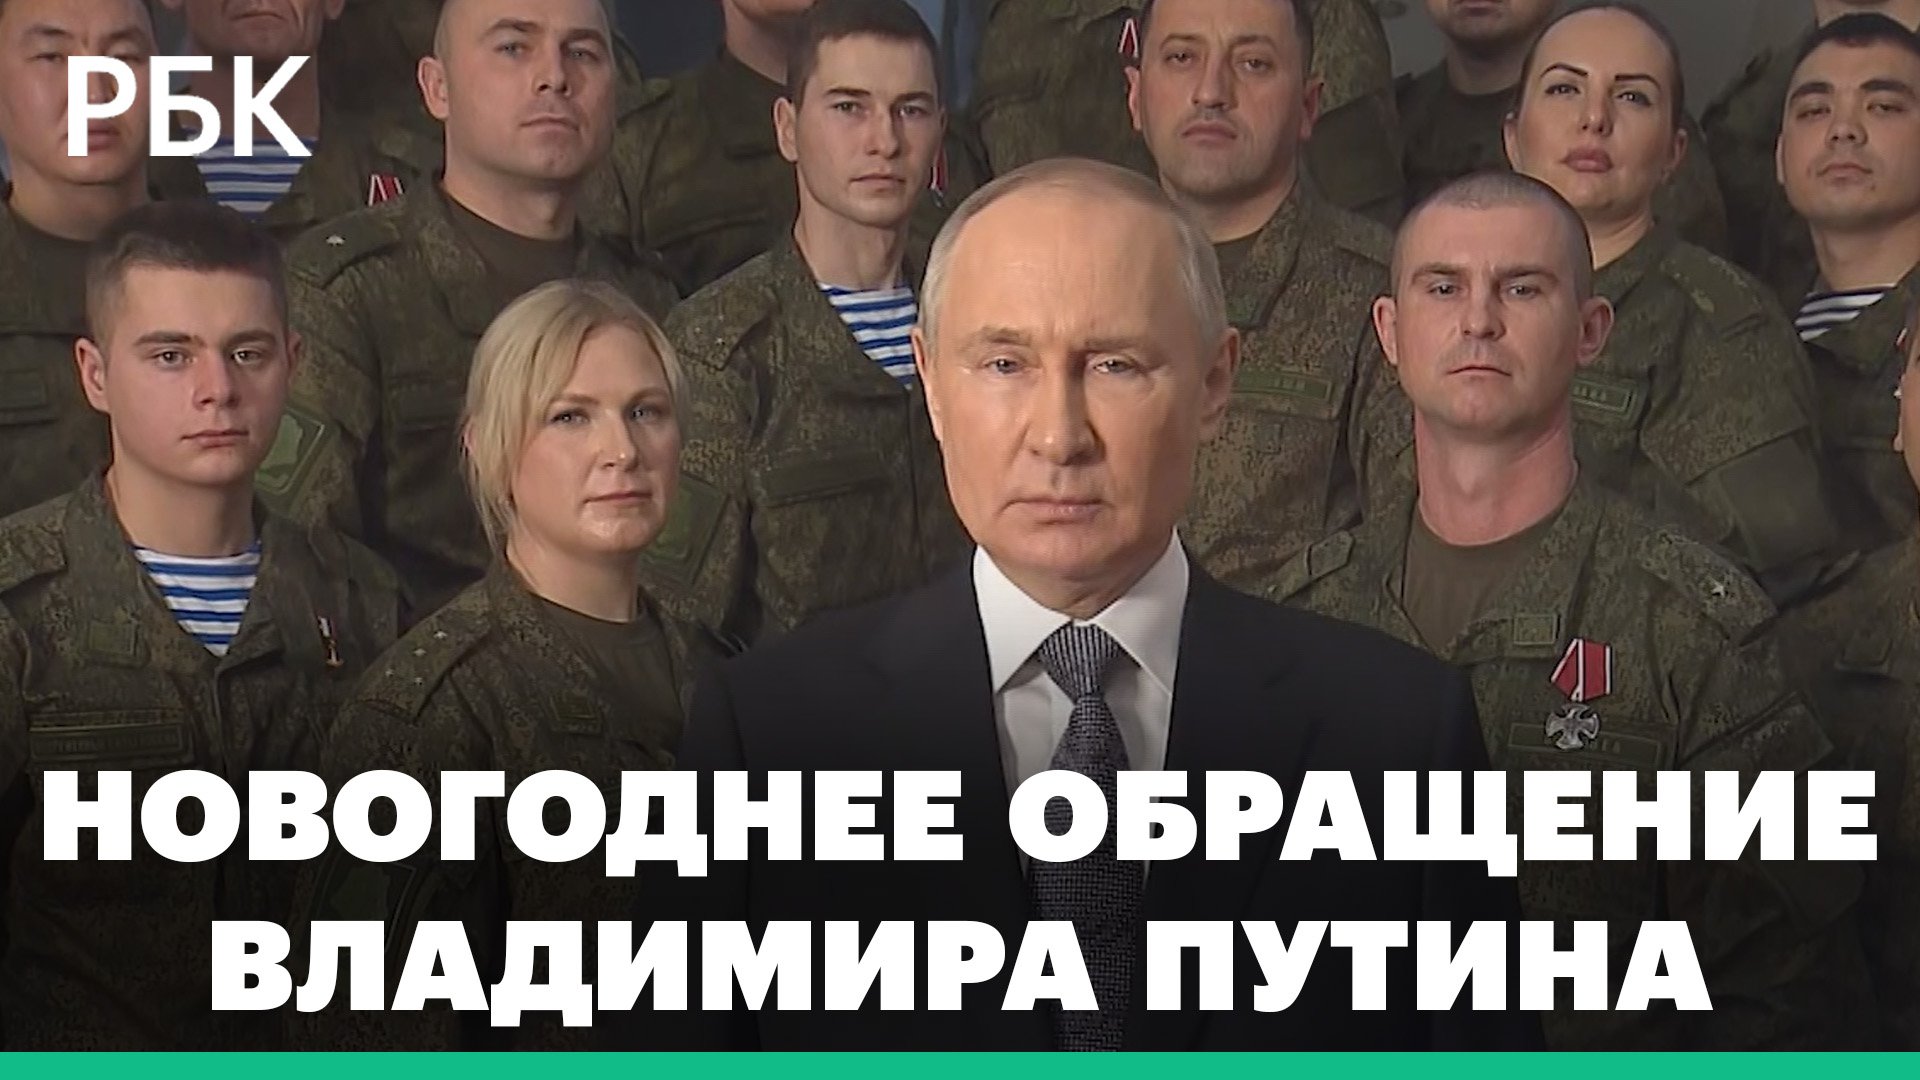 Путин поздравляет россиян с Новым годом 2023. Новогоднее обращение президента России на кануне 2023